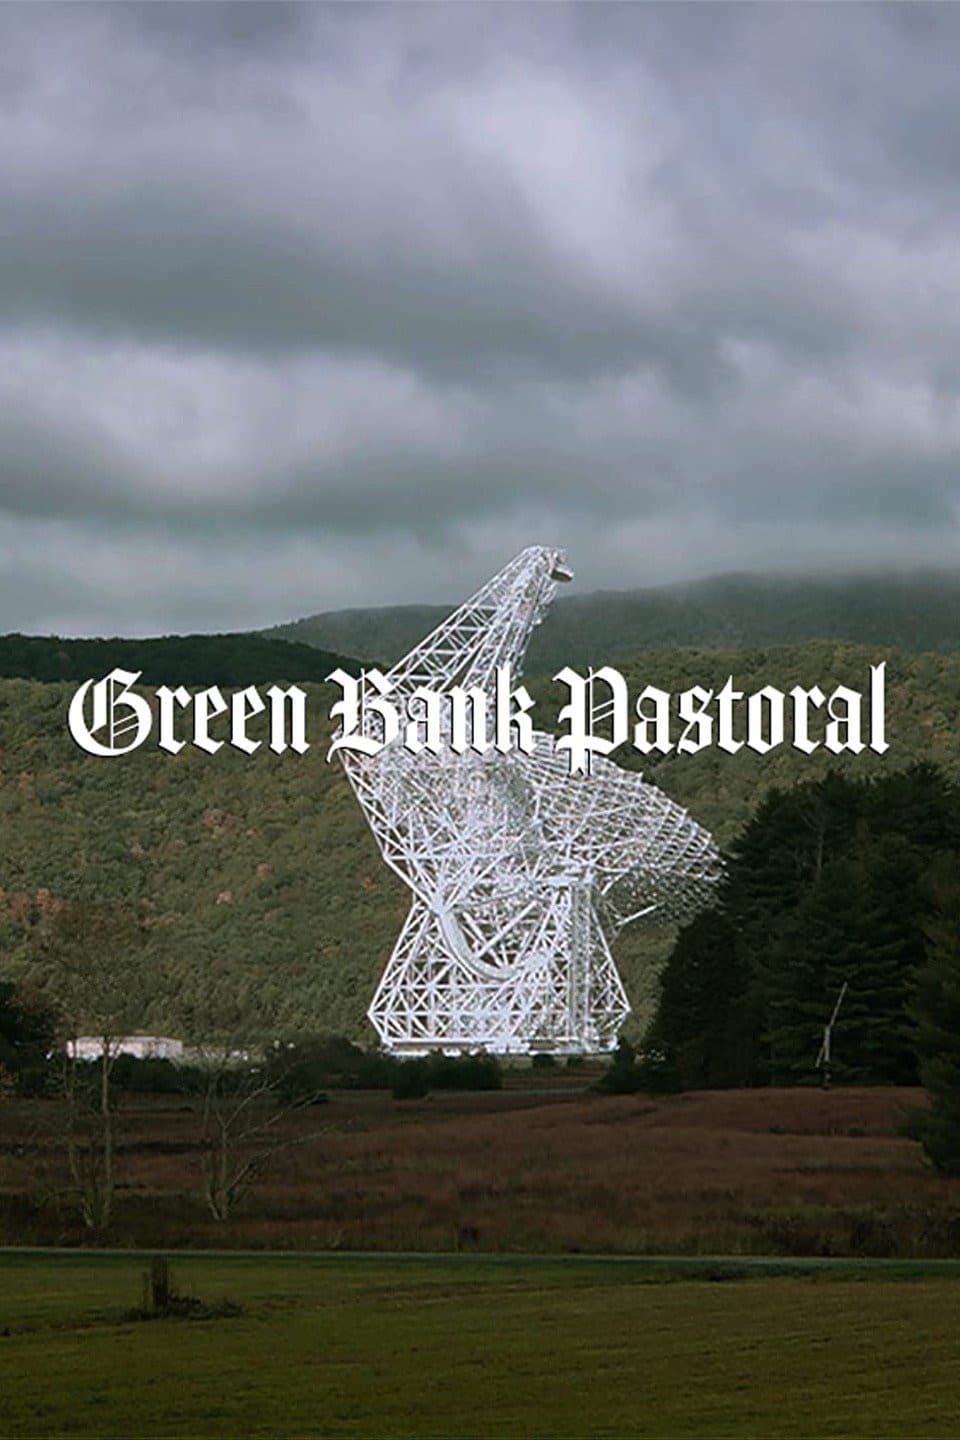 Green Bank Pastoral